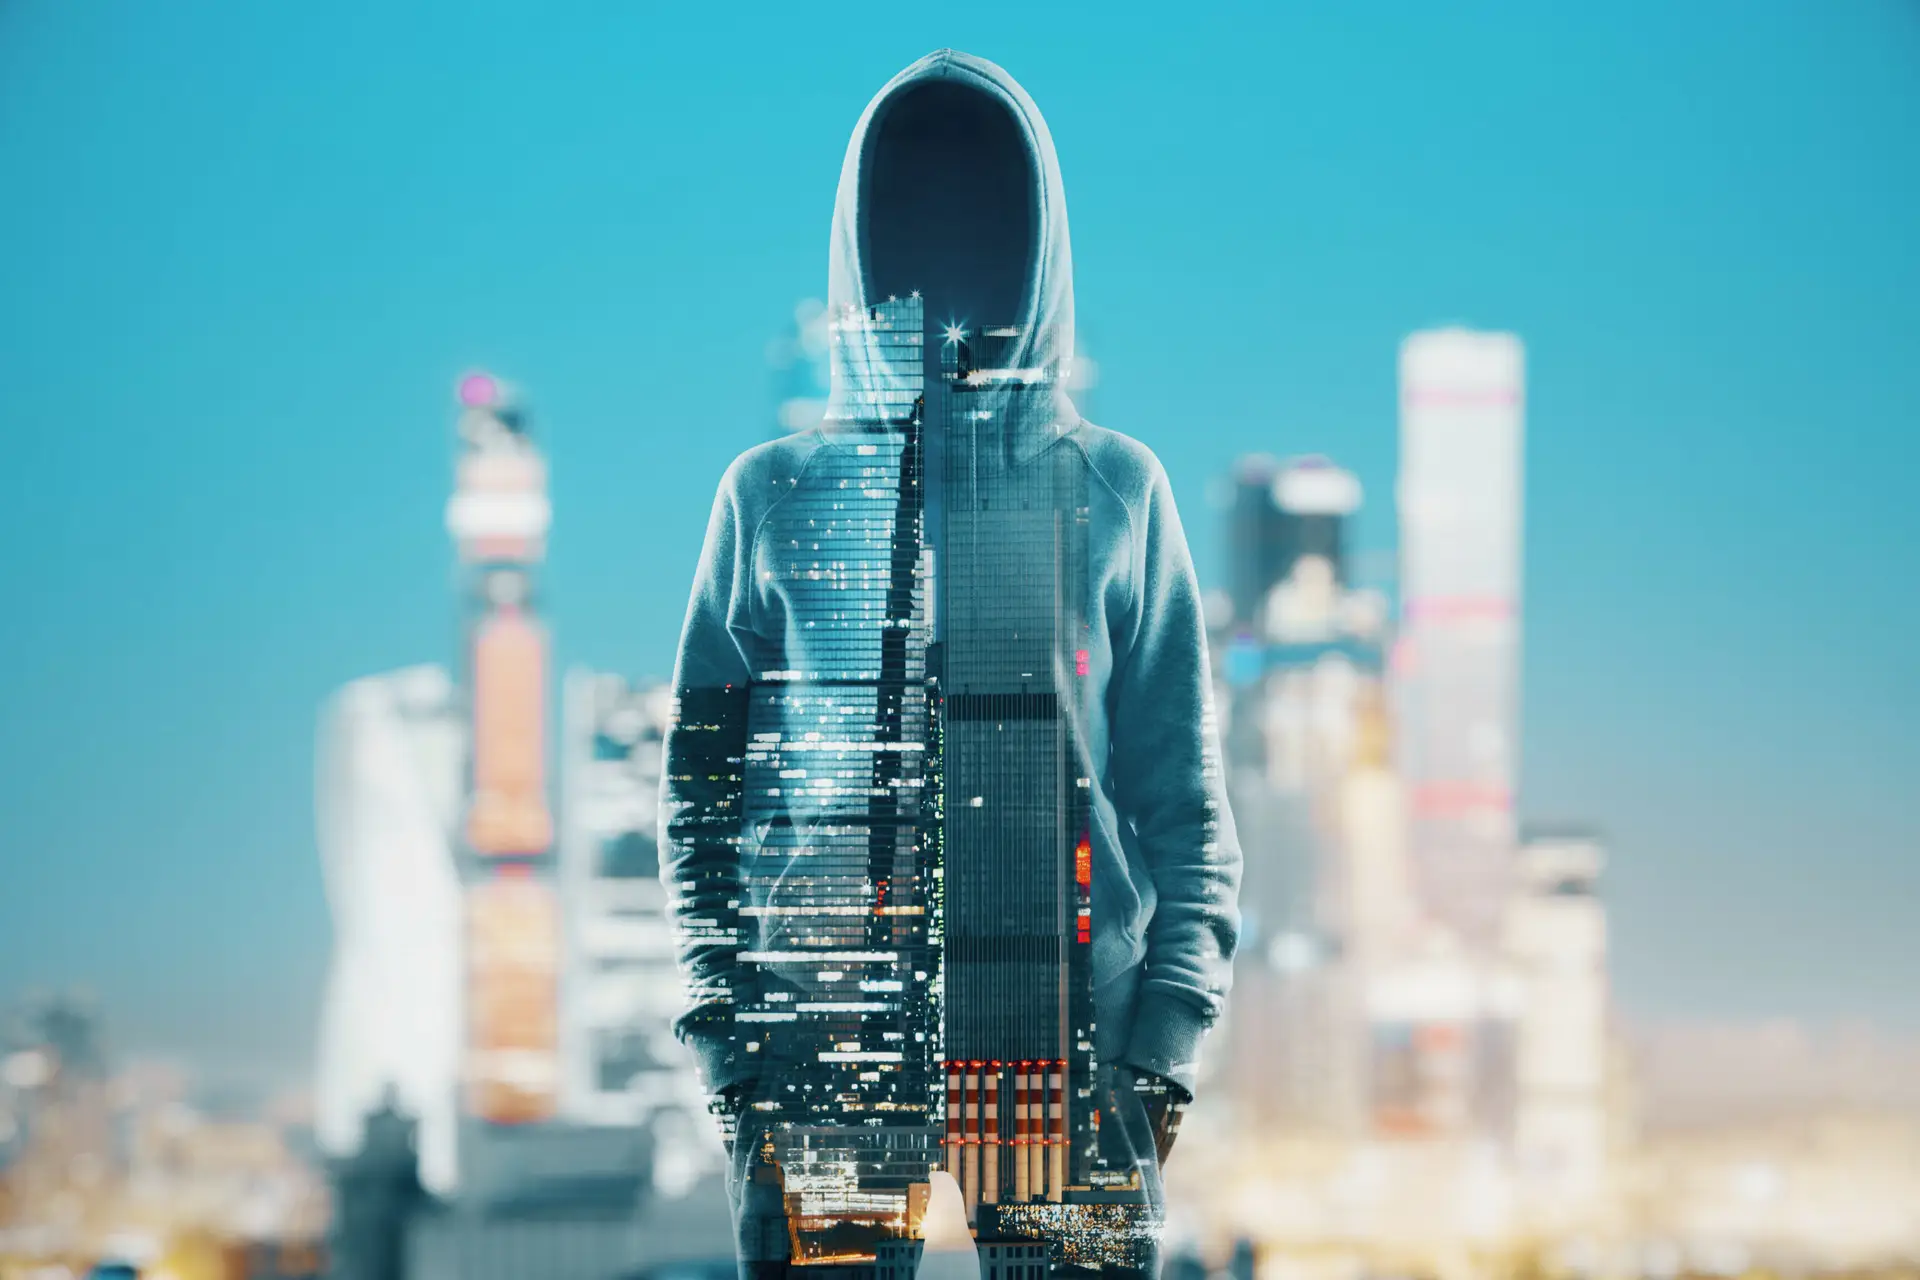 Eine doppelte Belichtung zeigt eine Person in einem Kapuzenpullover, die mit der Skyline einer Stadt verschmilzt, was die komplexe Beziehung zwischen Mensch und Künstlicher Intelligenz symbolisiert